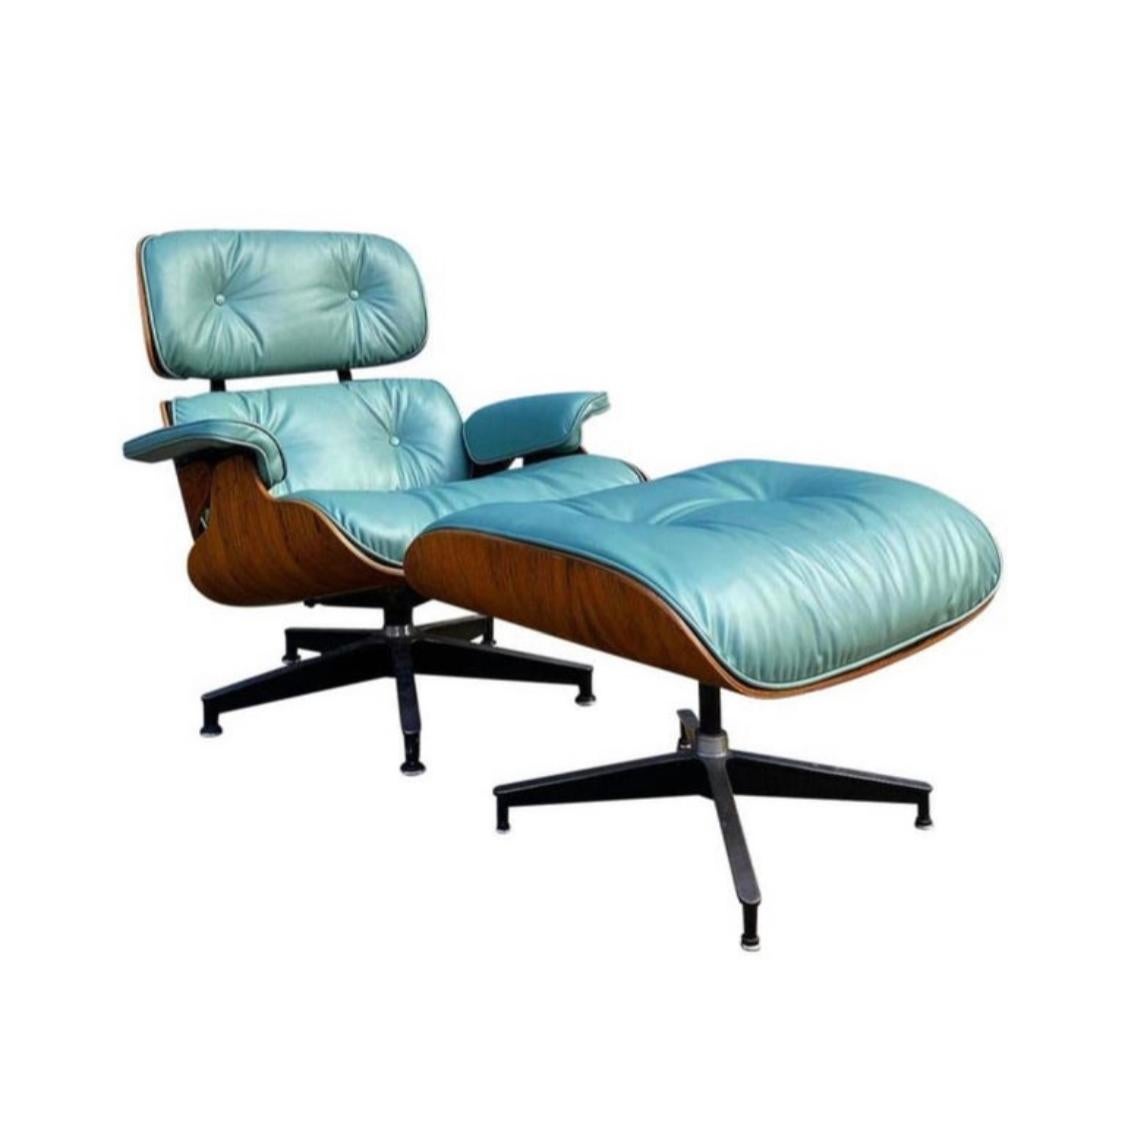 Unglaublich lebendige und elegante Ausgabe des klassischen Herman Miller Eames Lounge Chair und Ottoman, ca. 1960-70er Jahre Stuhl mit original Herman Miller Label. Custom Lederkissen in hervorragendem Zustand. Diesen Farbton haben wir bisher noch